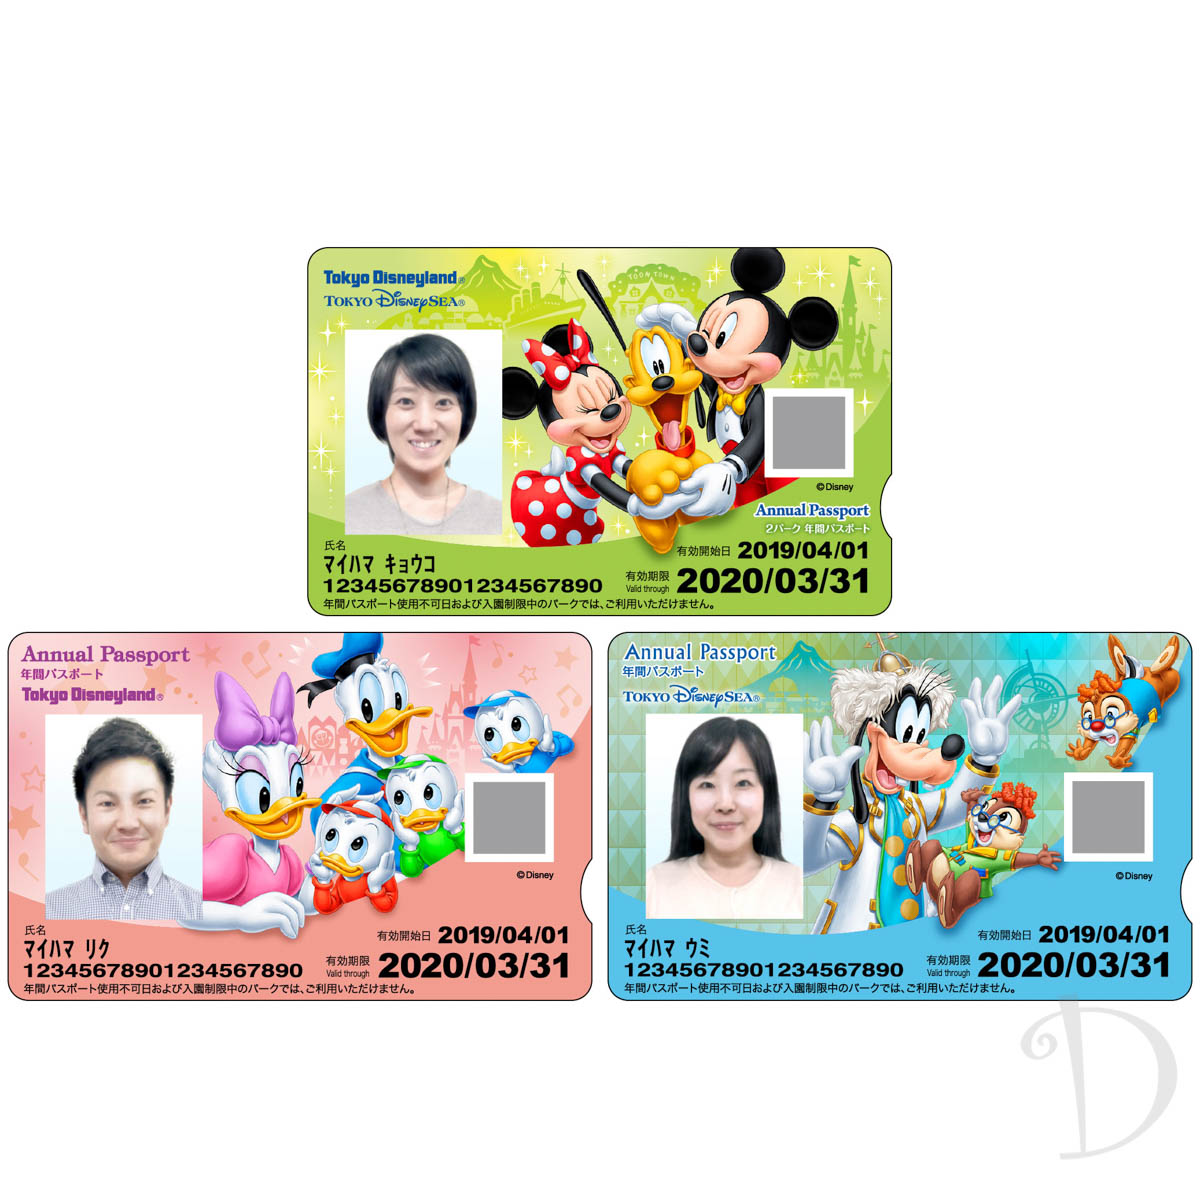 東京ディズニーリゾート2パーク年間パスポート引換券施設利用券